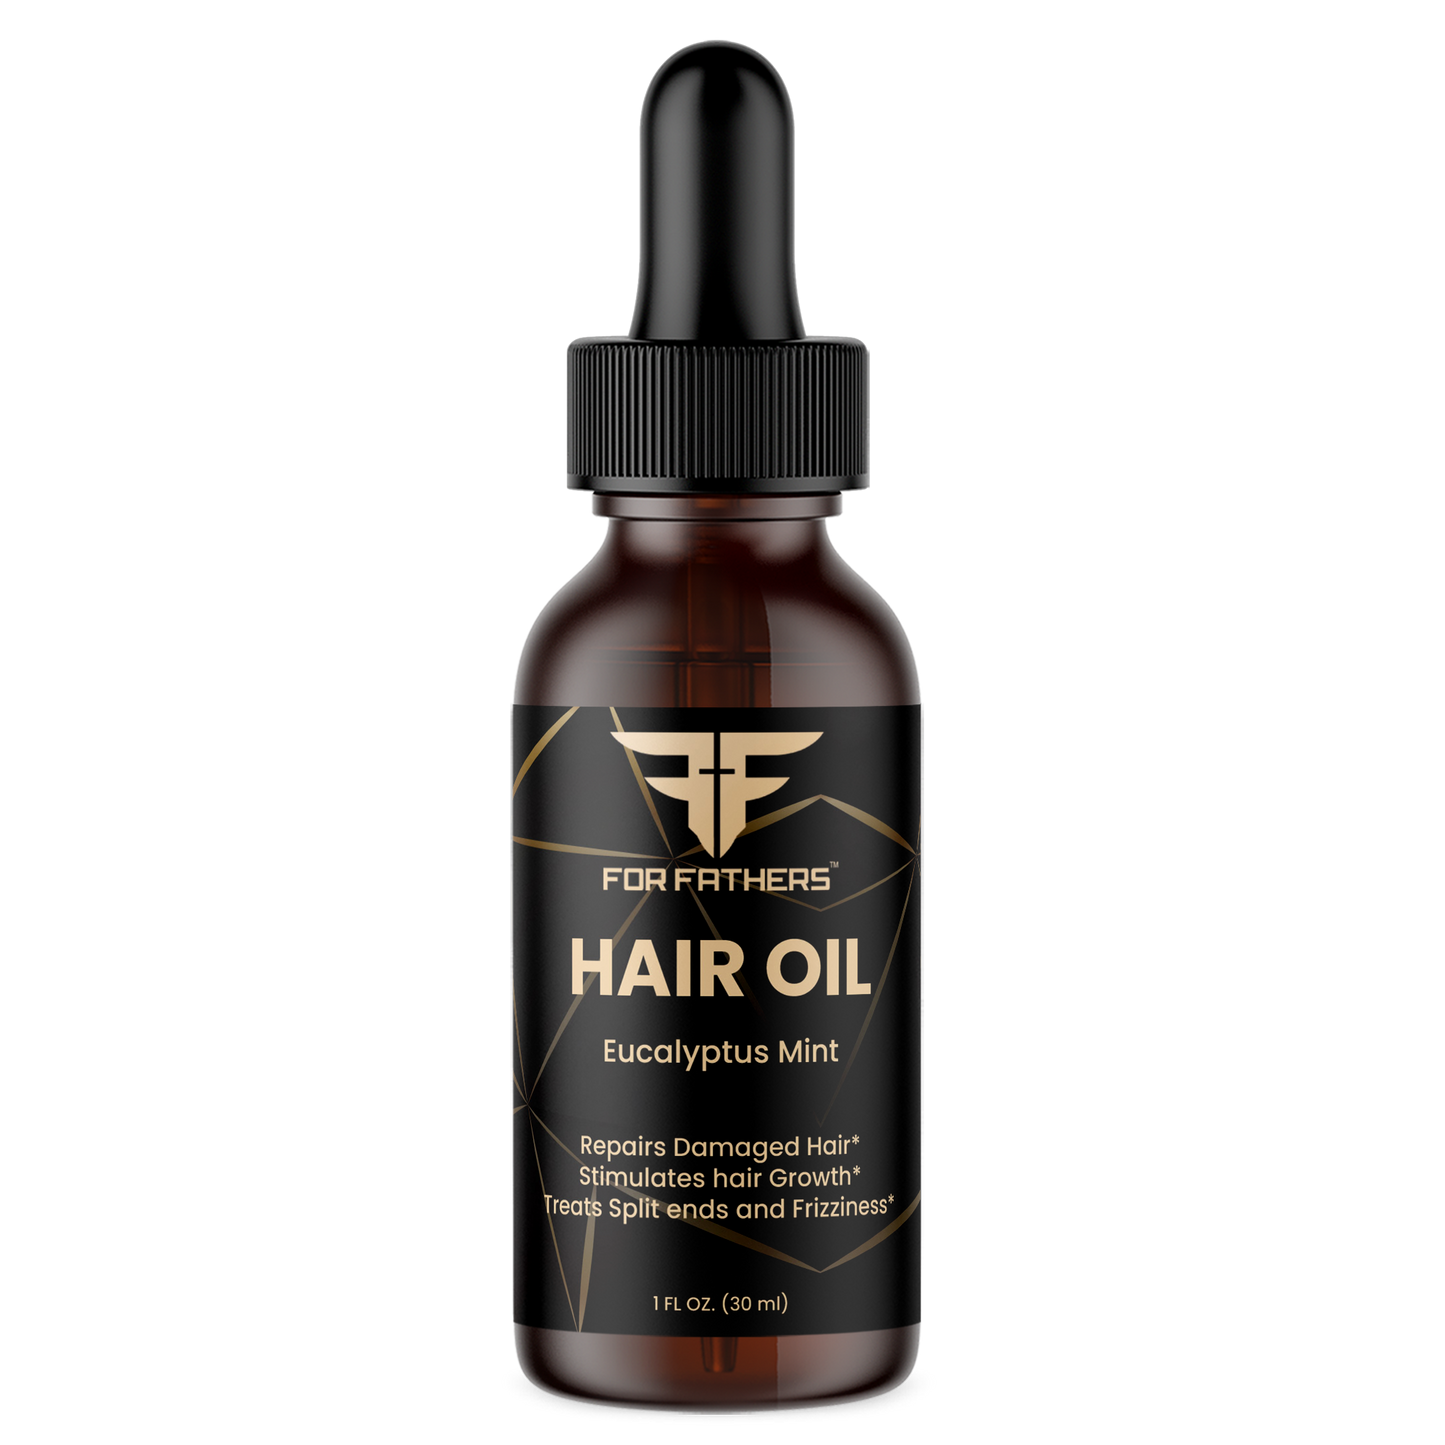 Hair Oil (Eucalyptus Mint) 2 oz